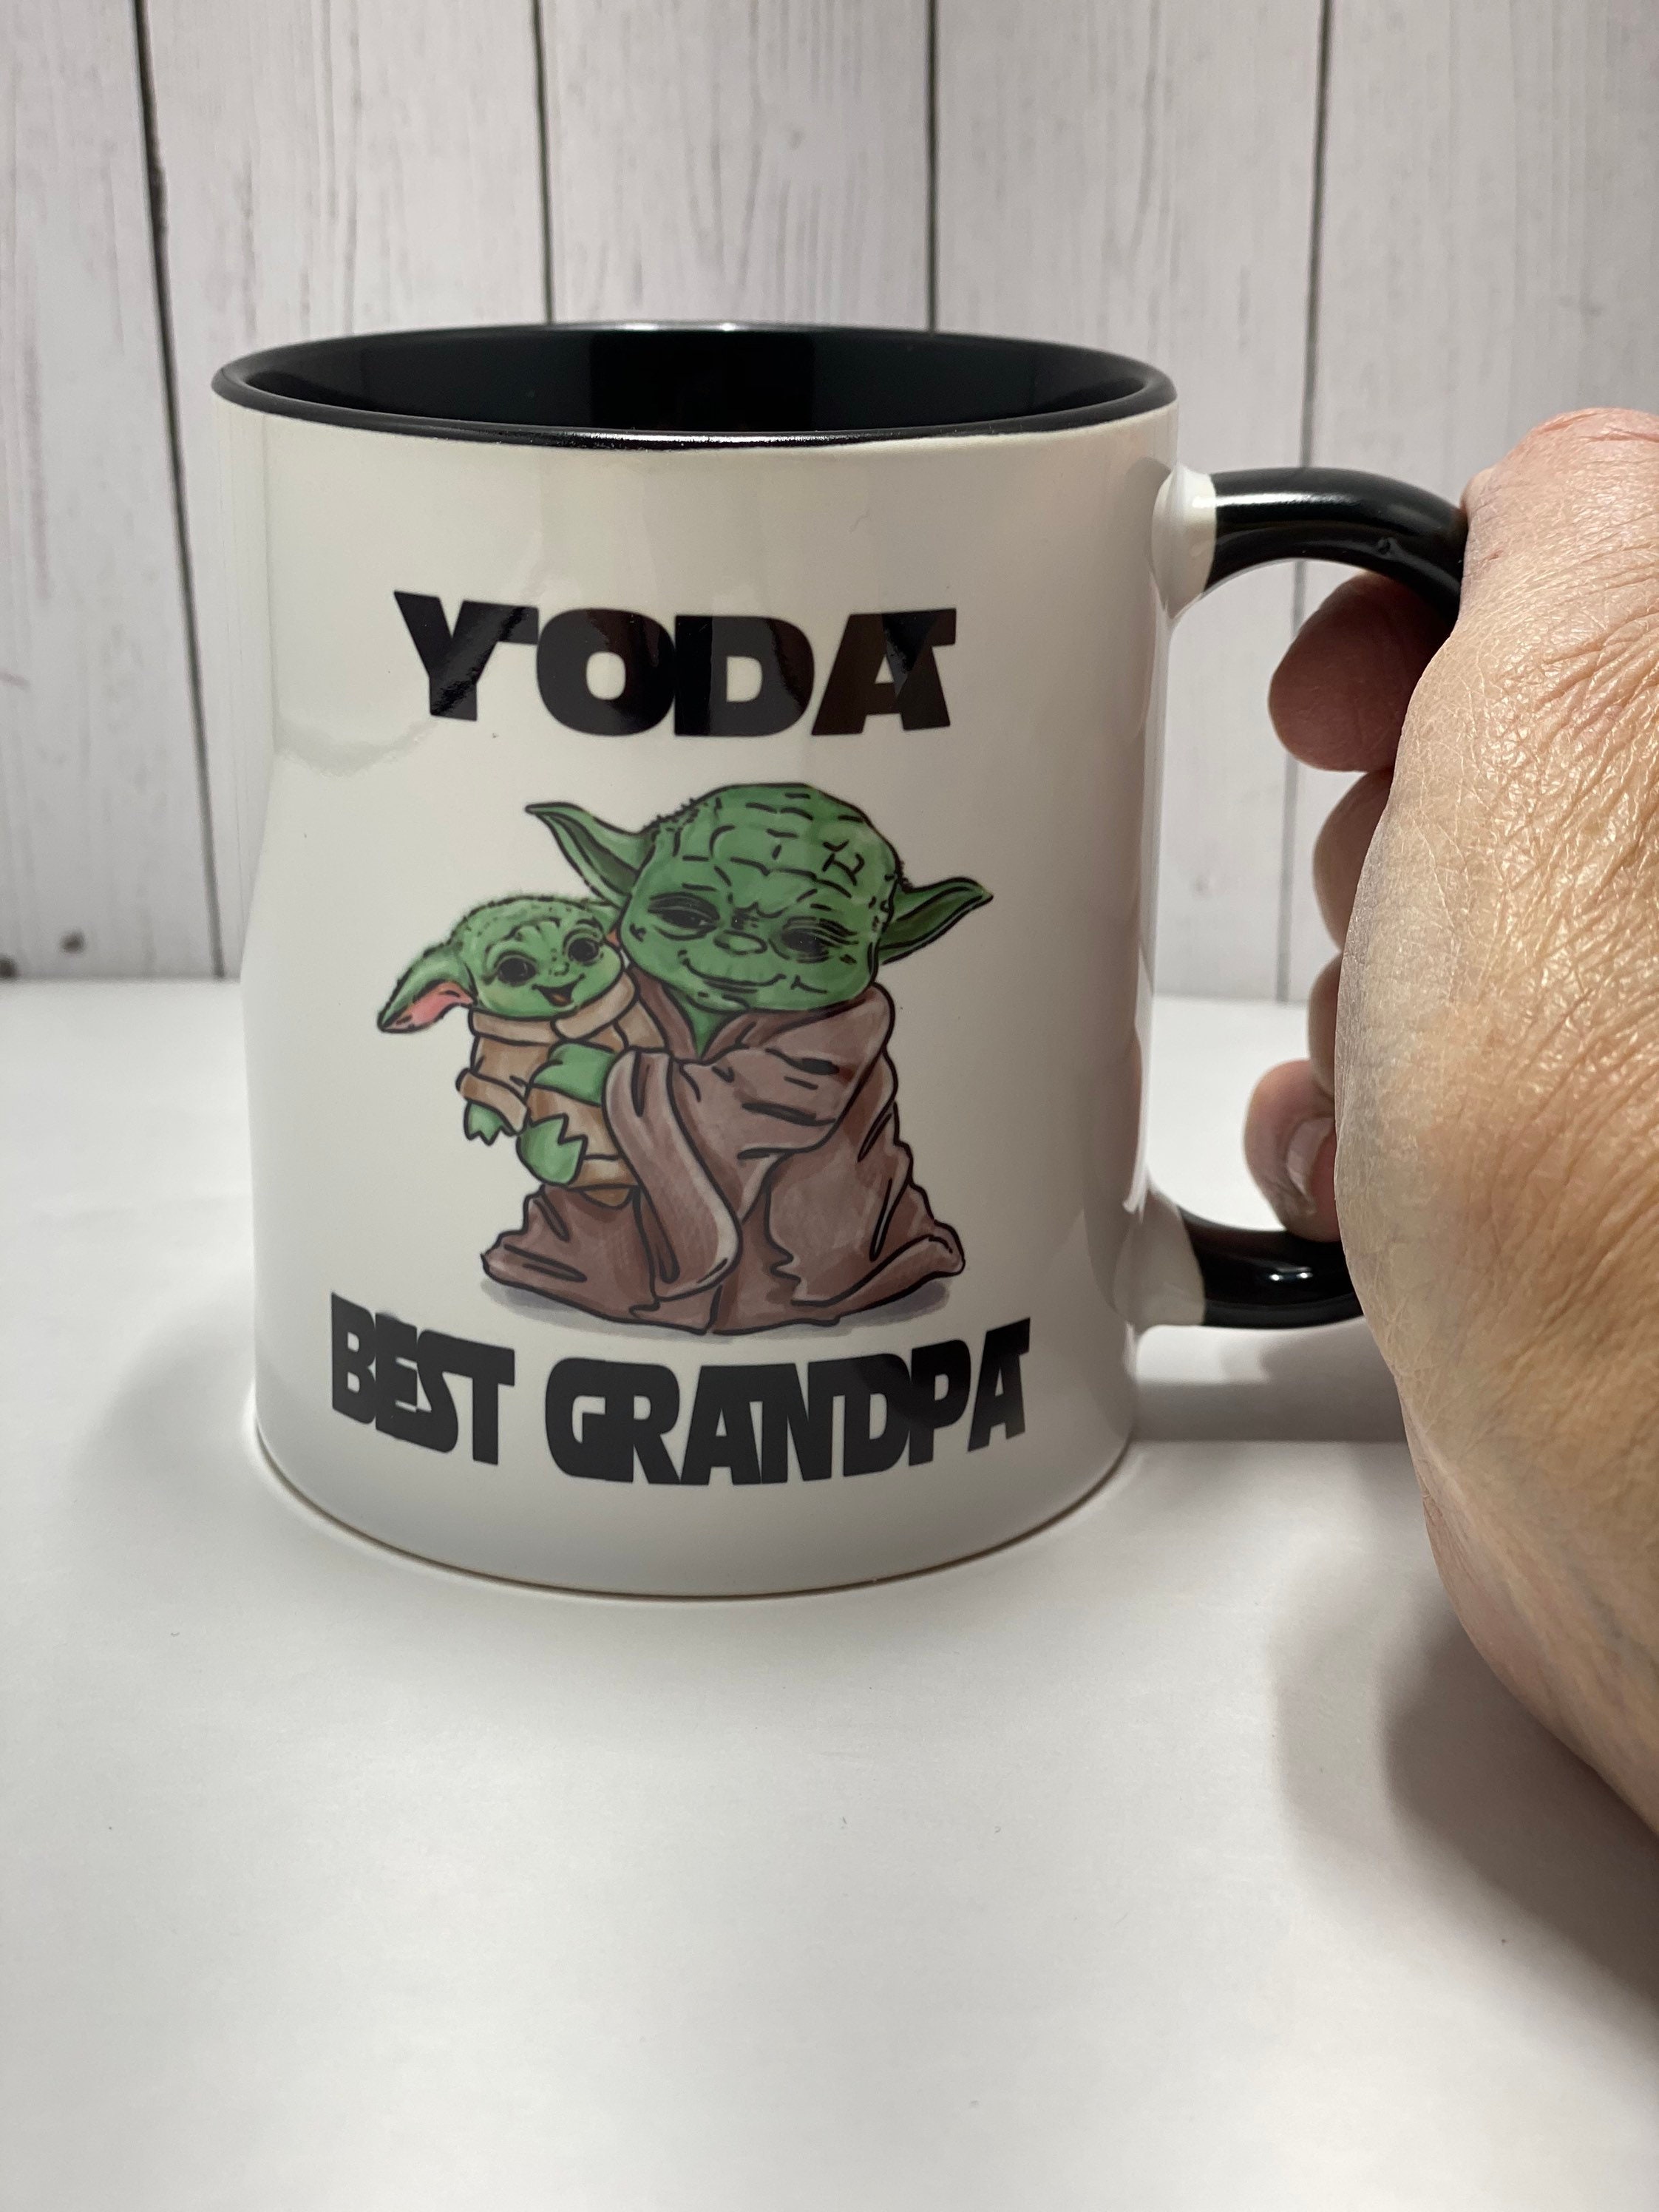 Baby Yoda Best Grandpa Papa Star Wars Ceramic Mug Gift for Fathers Day  Birthday - Etsy